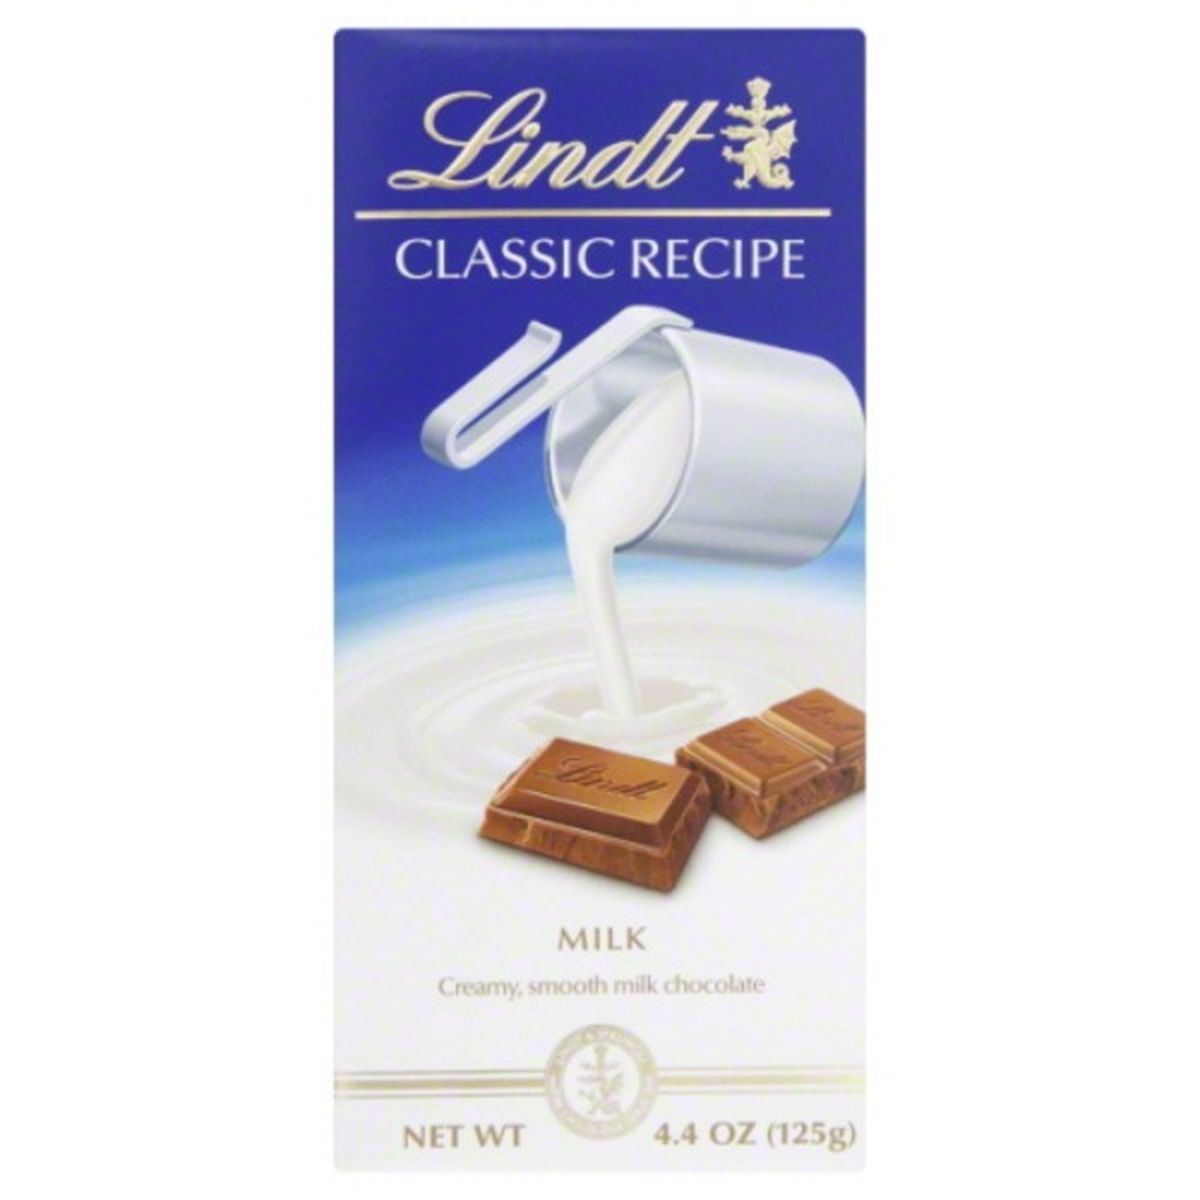 Calories in Lindt Classic Recipe Milk Chocolate